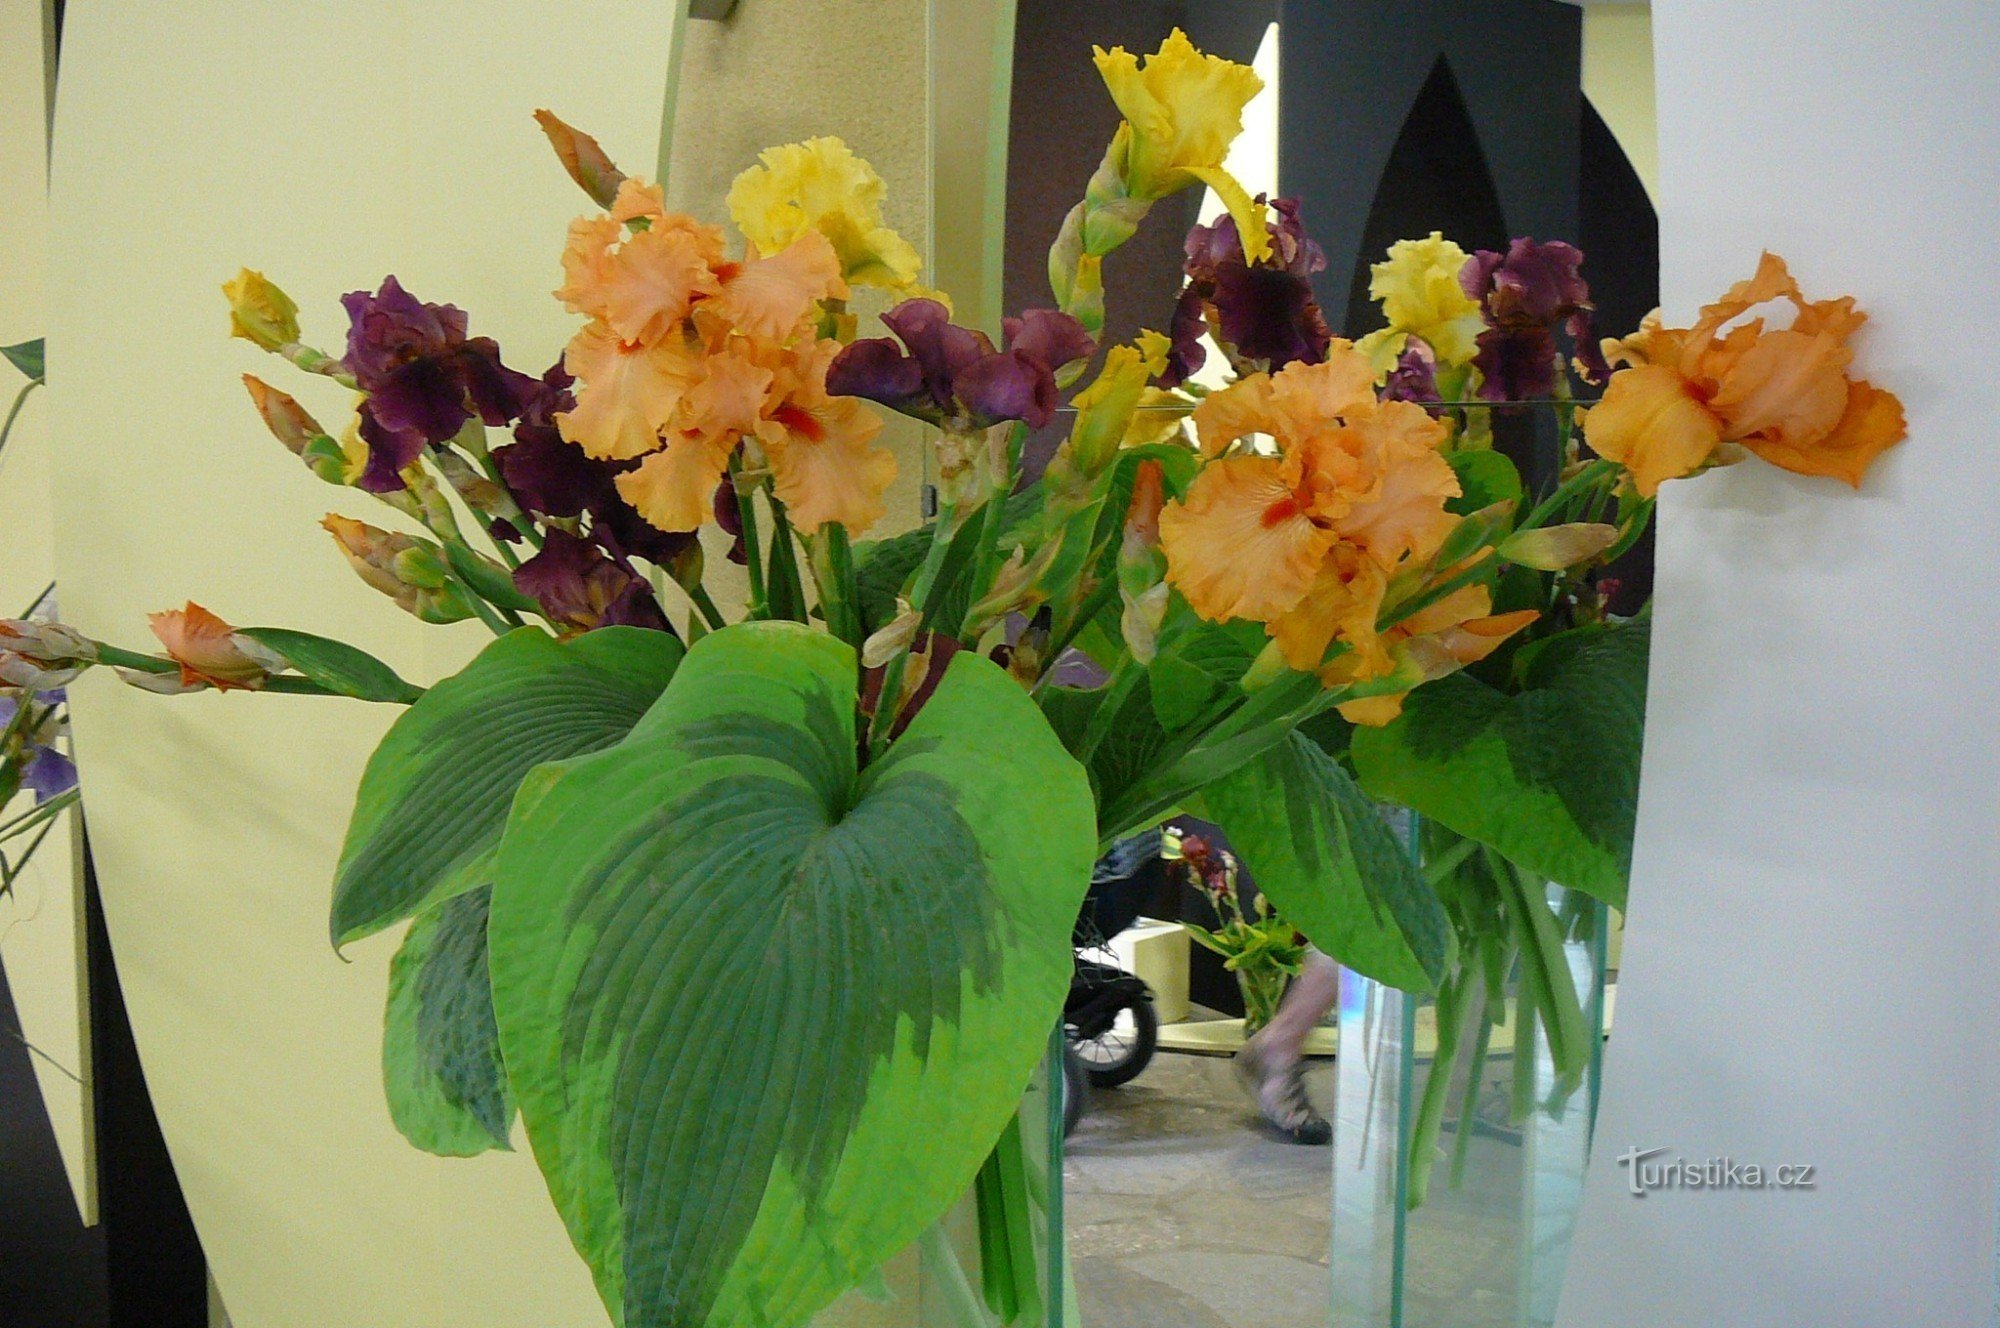 Exhibition of irises